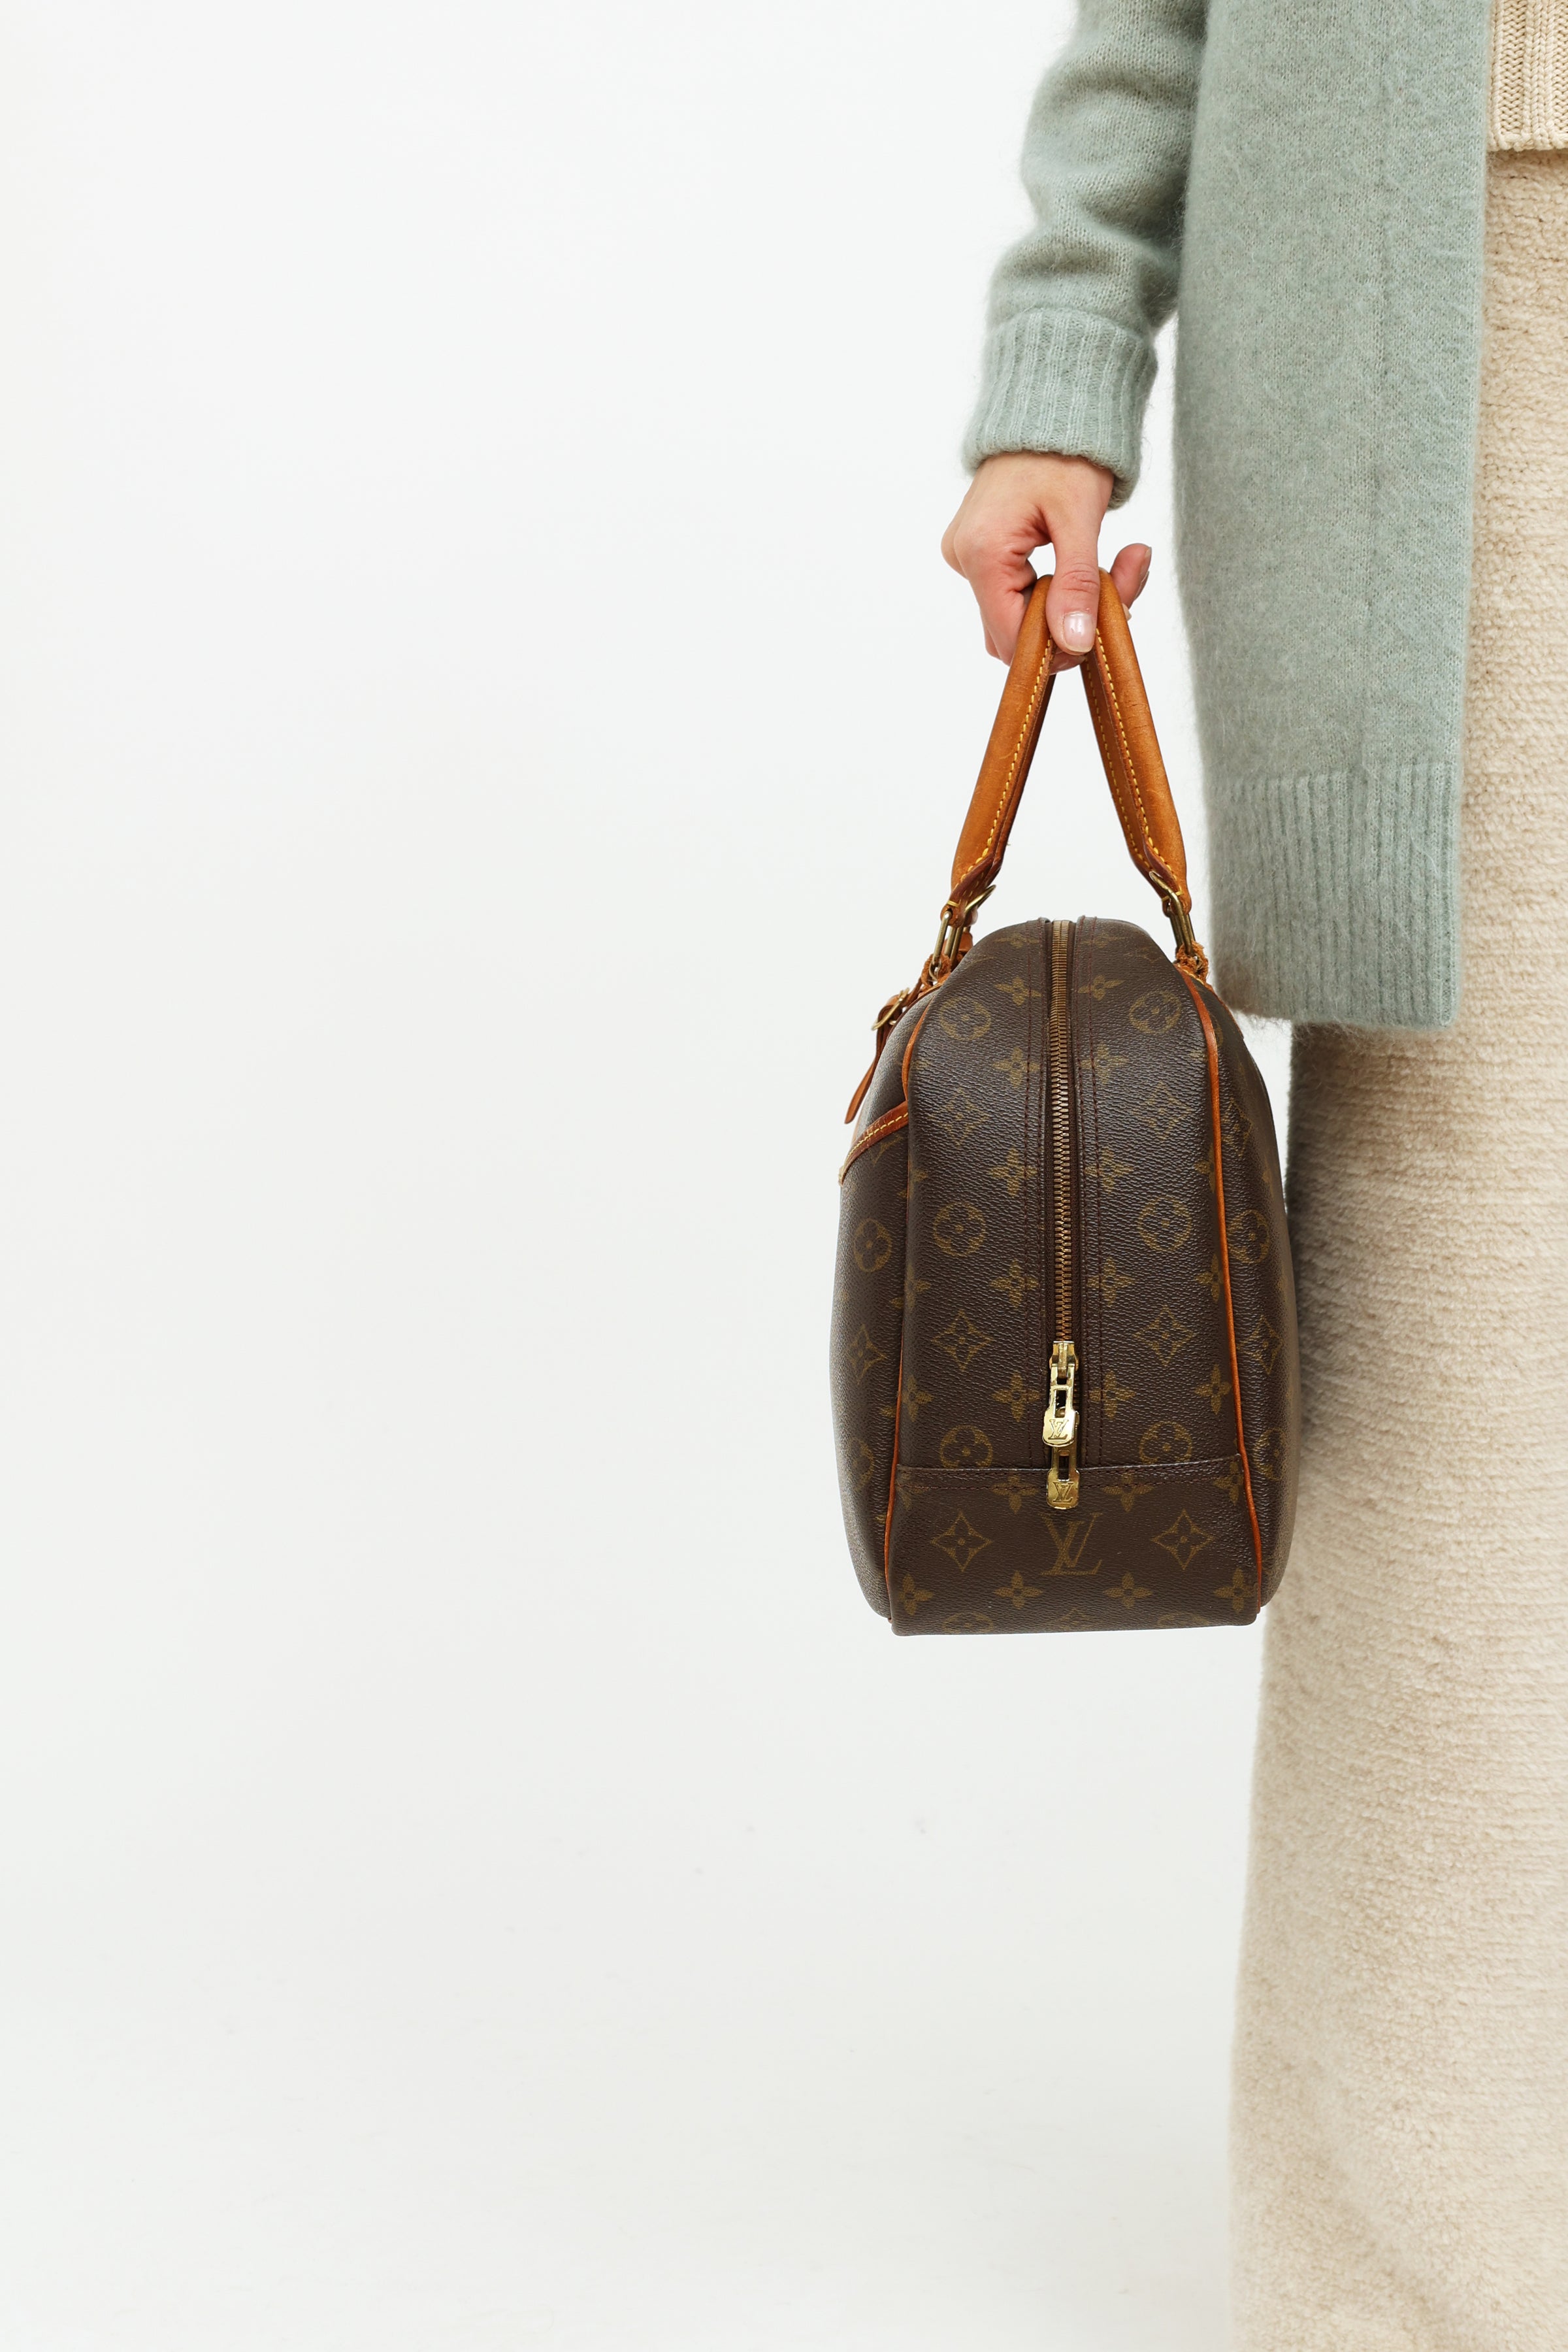 Deauville cloth handbag Louis Vuitton Brown in Cloth - 38753058